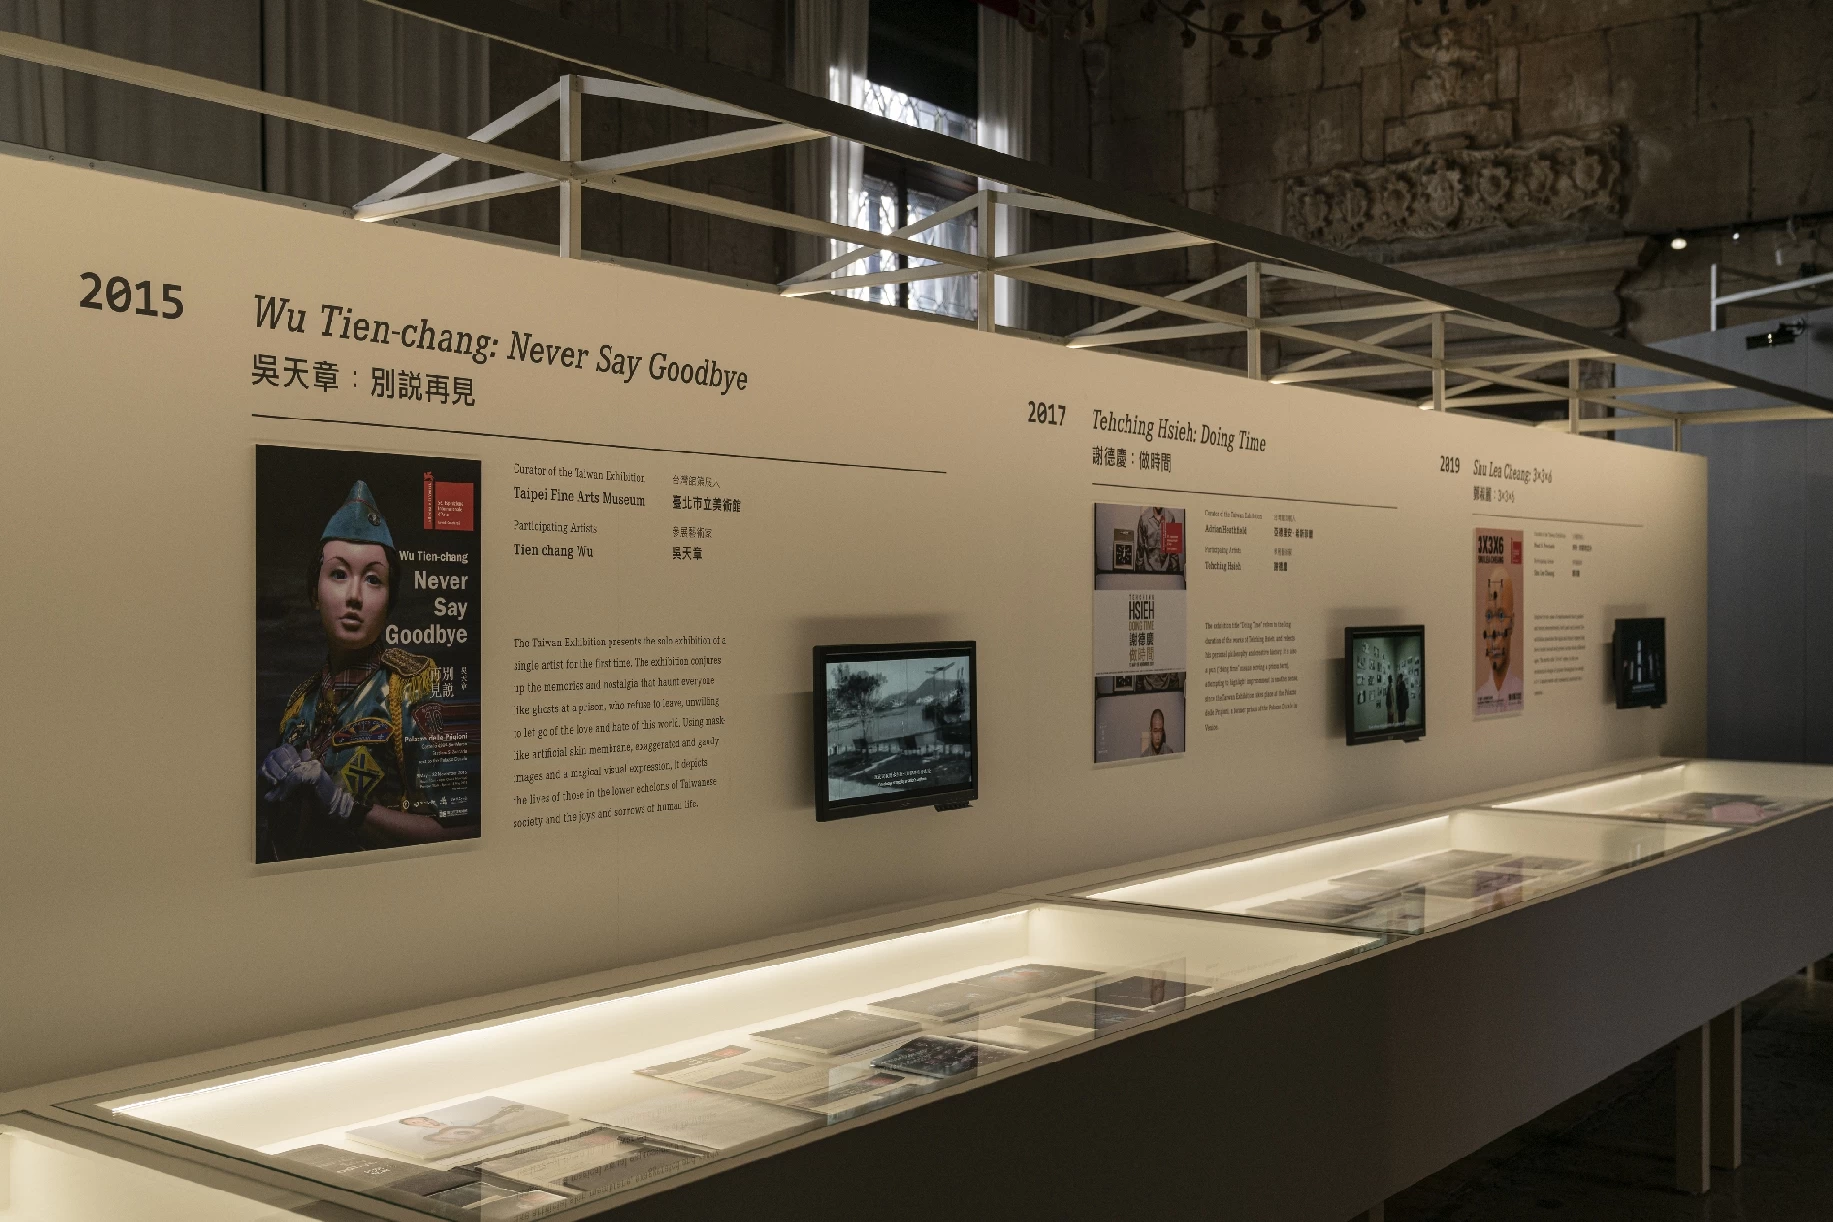 第59屆威尼斯雙年展台灣館「不可能的夢」展場之第56至58屆文獻-圖片